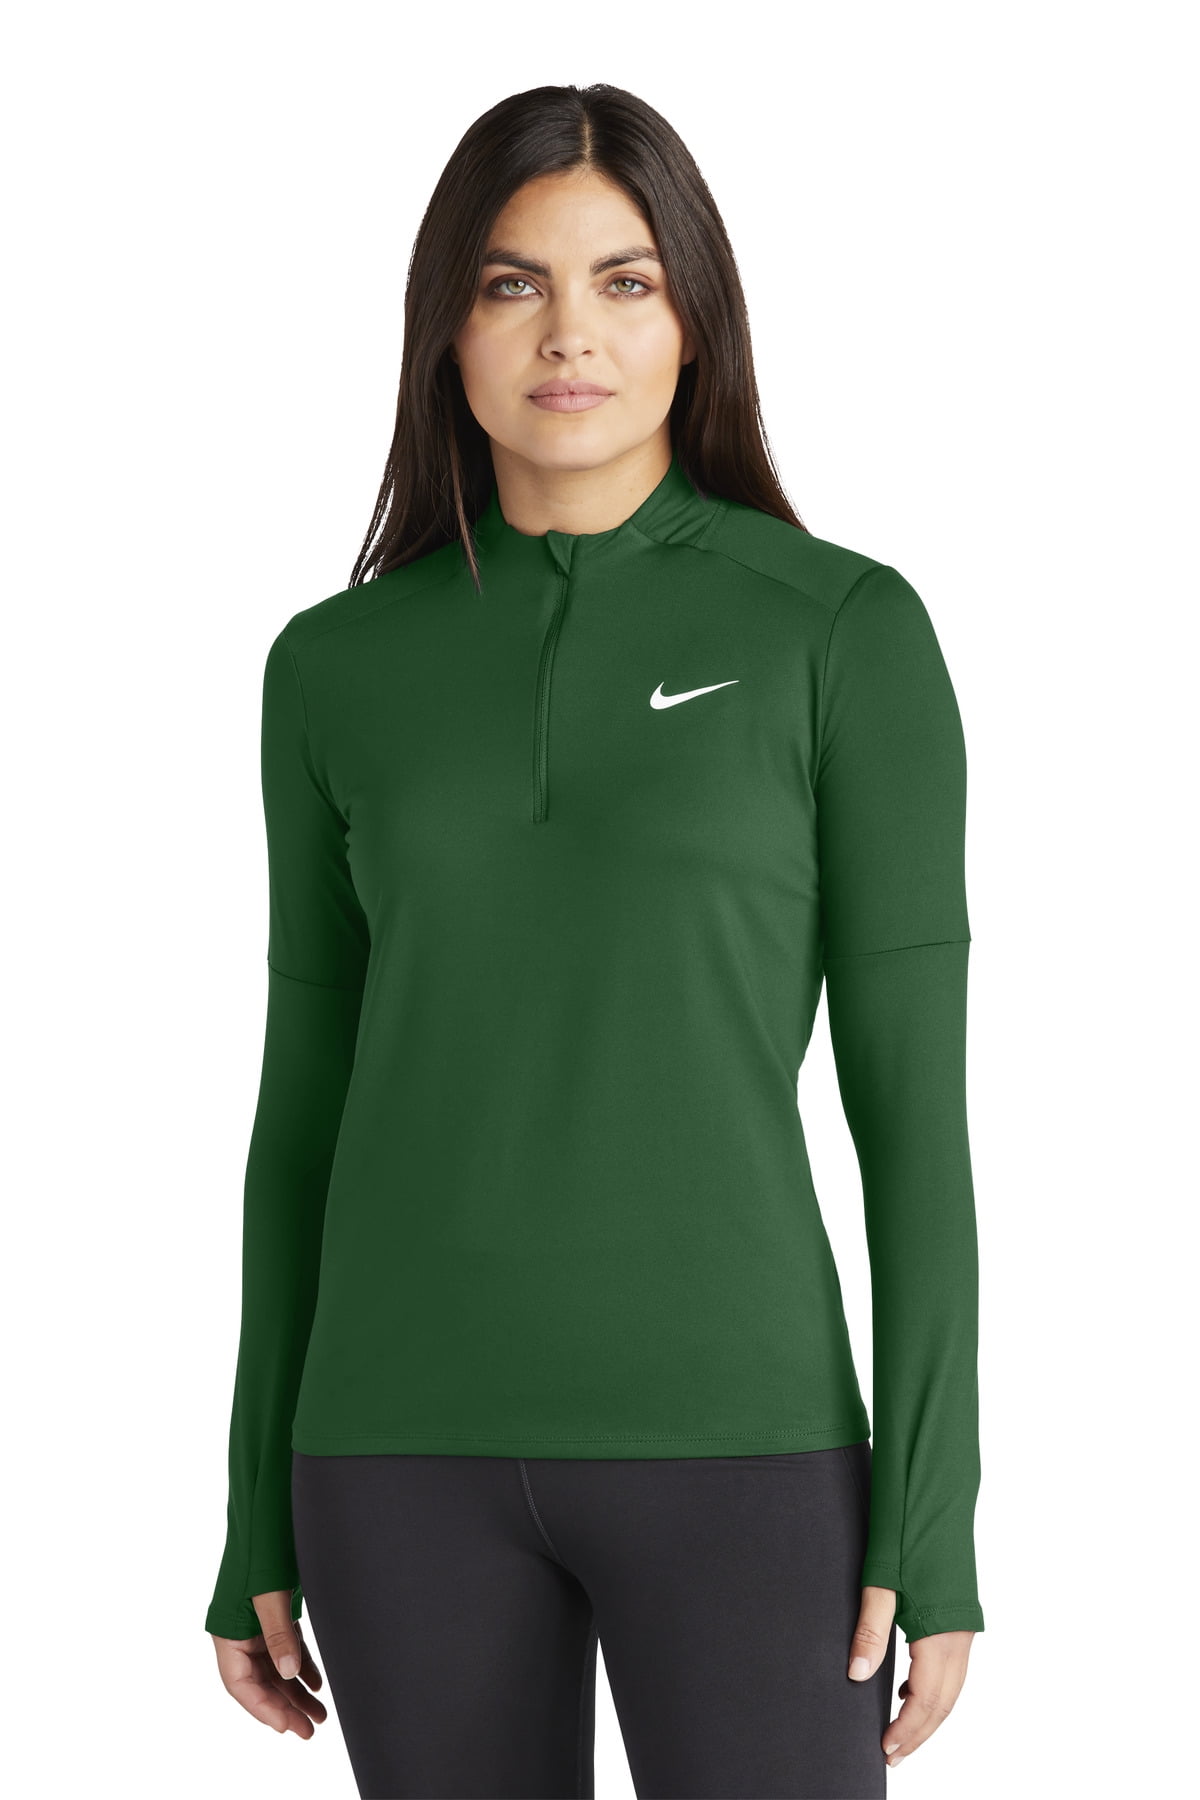 universiteitsstudent tweedehands gips DH4951 Nike Women's Dri-Fit Element Long Sleeve 1/2 zip top Dark  Green/White M - Walmart.com